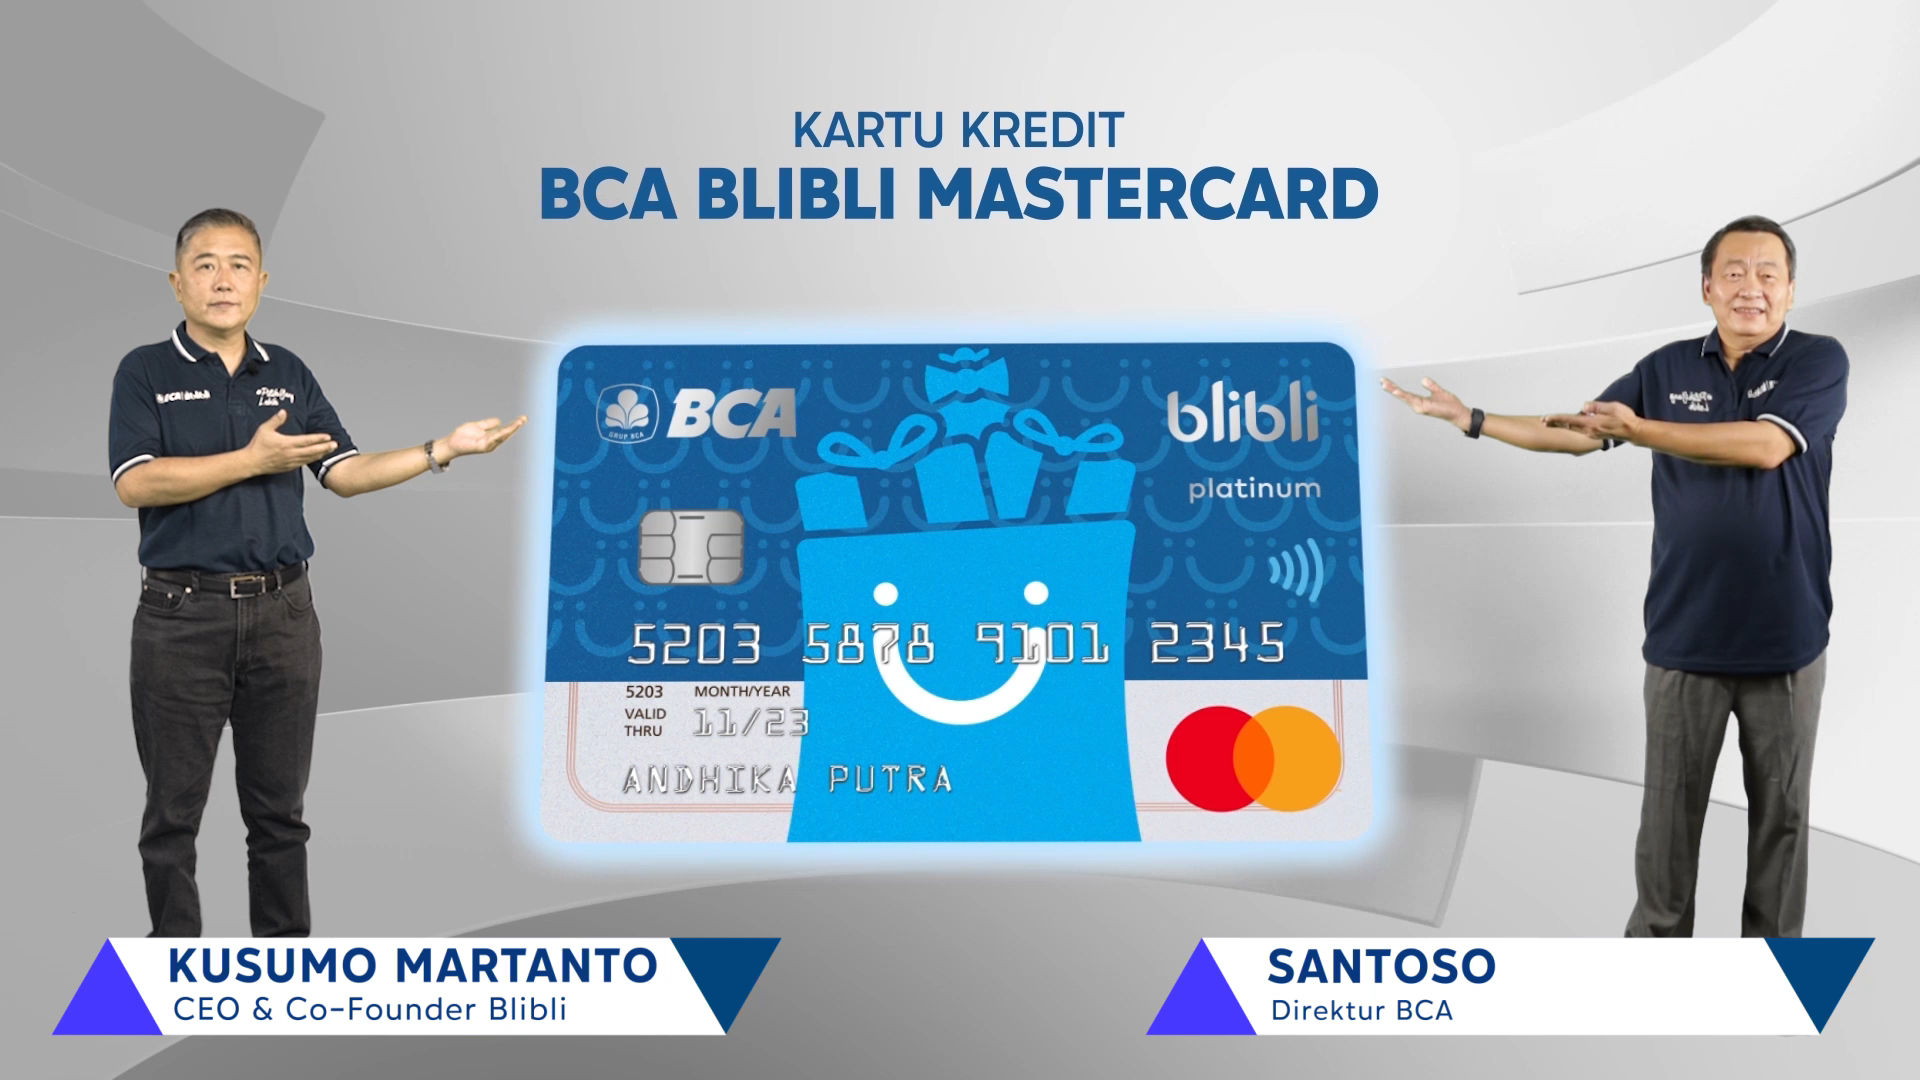 Kusumo Martanto, CEO dan Co-Founder Blibli dan Santoso, Direktur BCA dalam Peluncuran Kartu Kredit BCA Blibli Mastercard